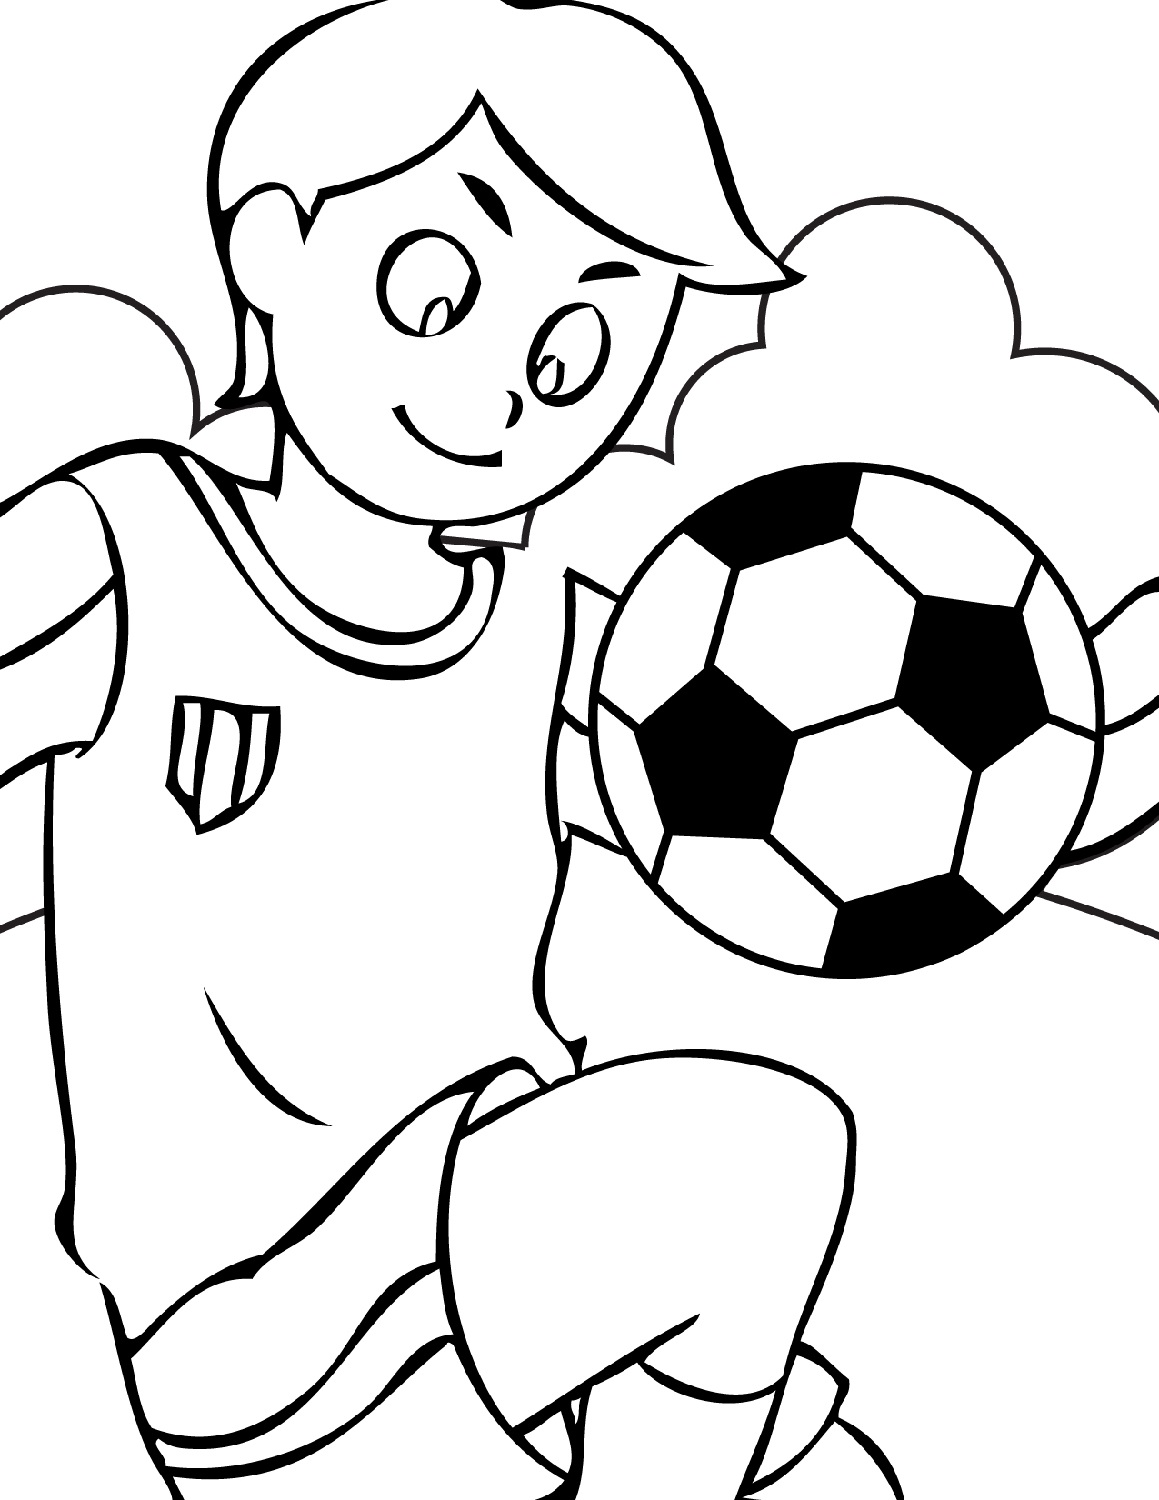 soccer-worksheets-for-kids-page